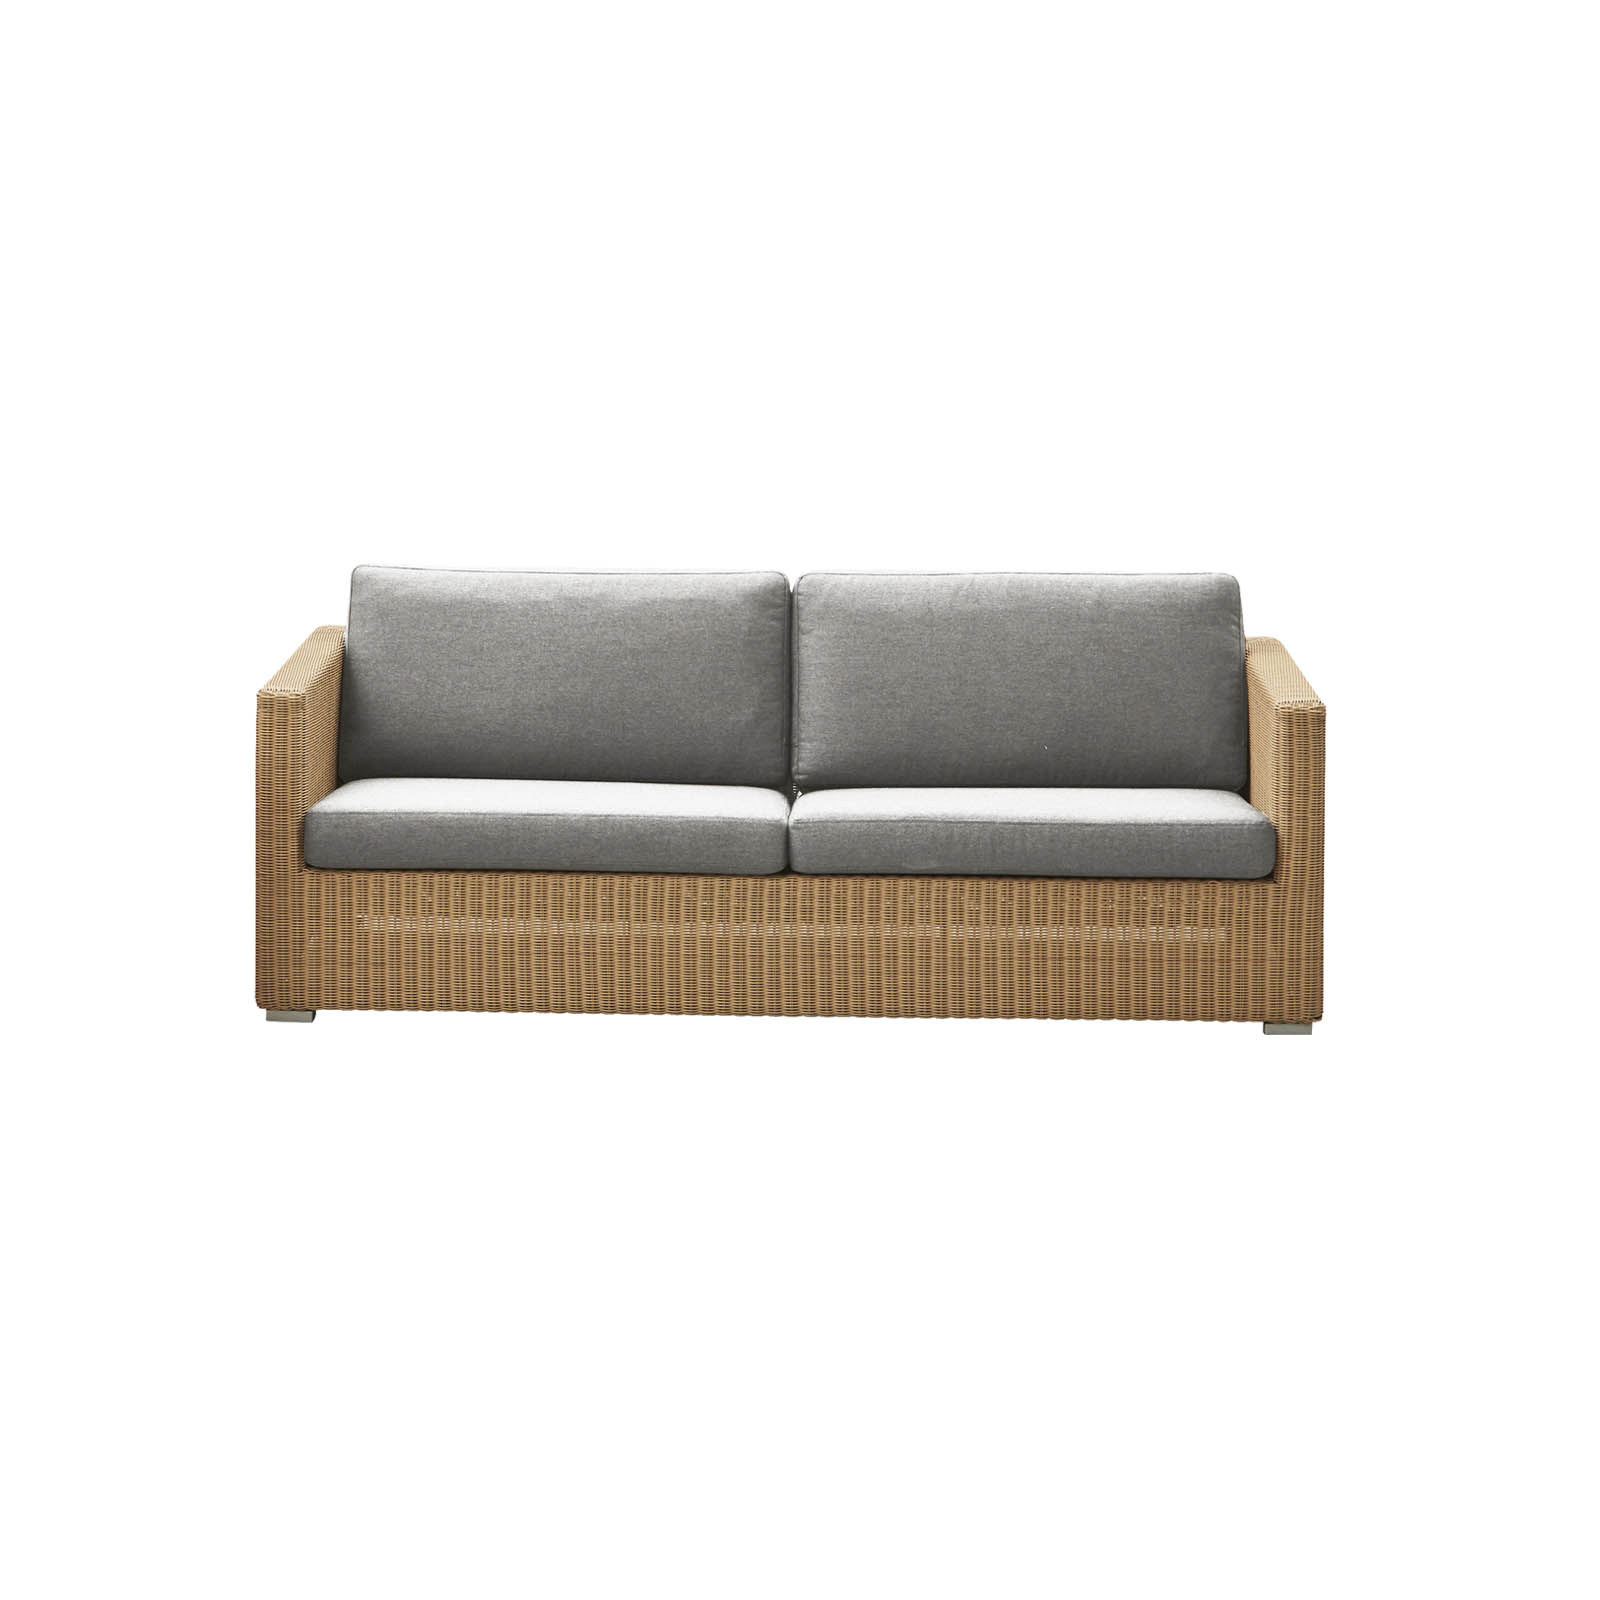 Chester 3-Sitzer Sofa aus Cane-line Weave in Natural mit Kissen aus Cane-line Natté in Light Grey